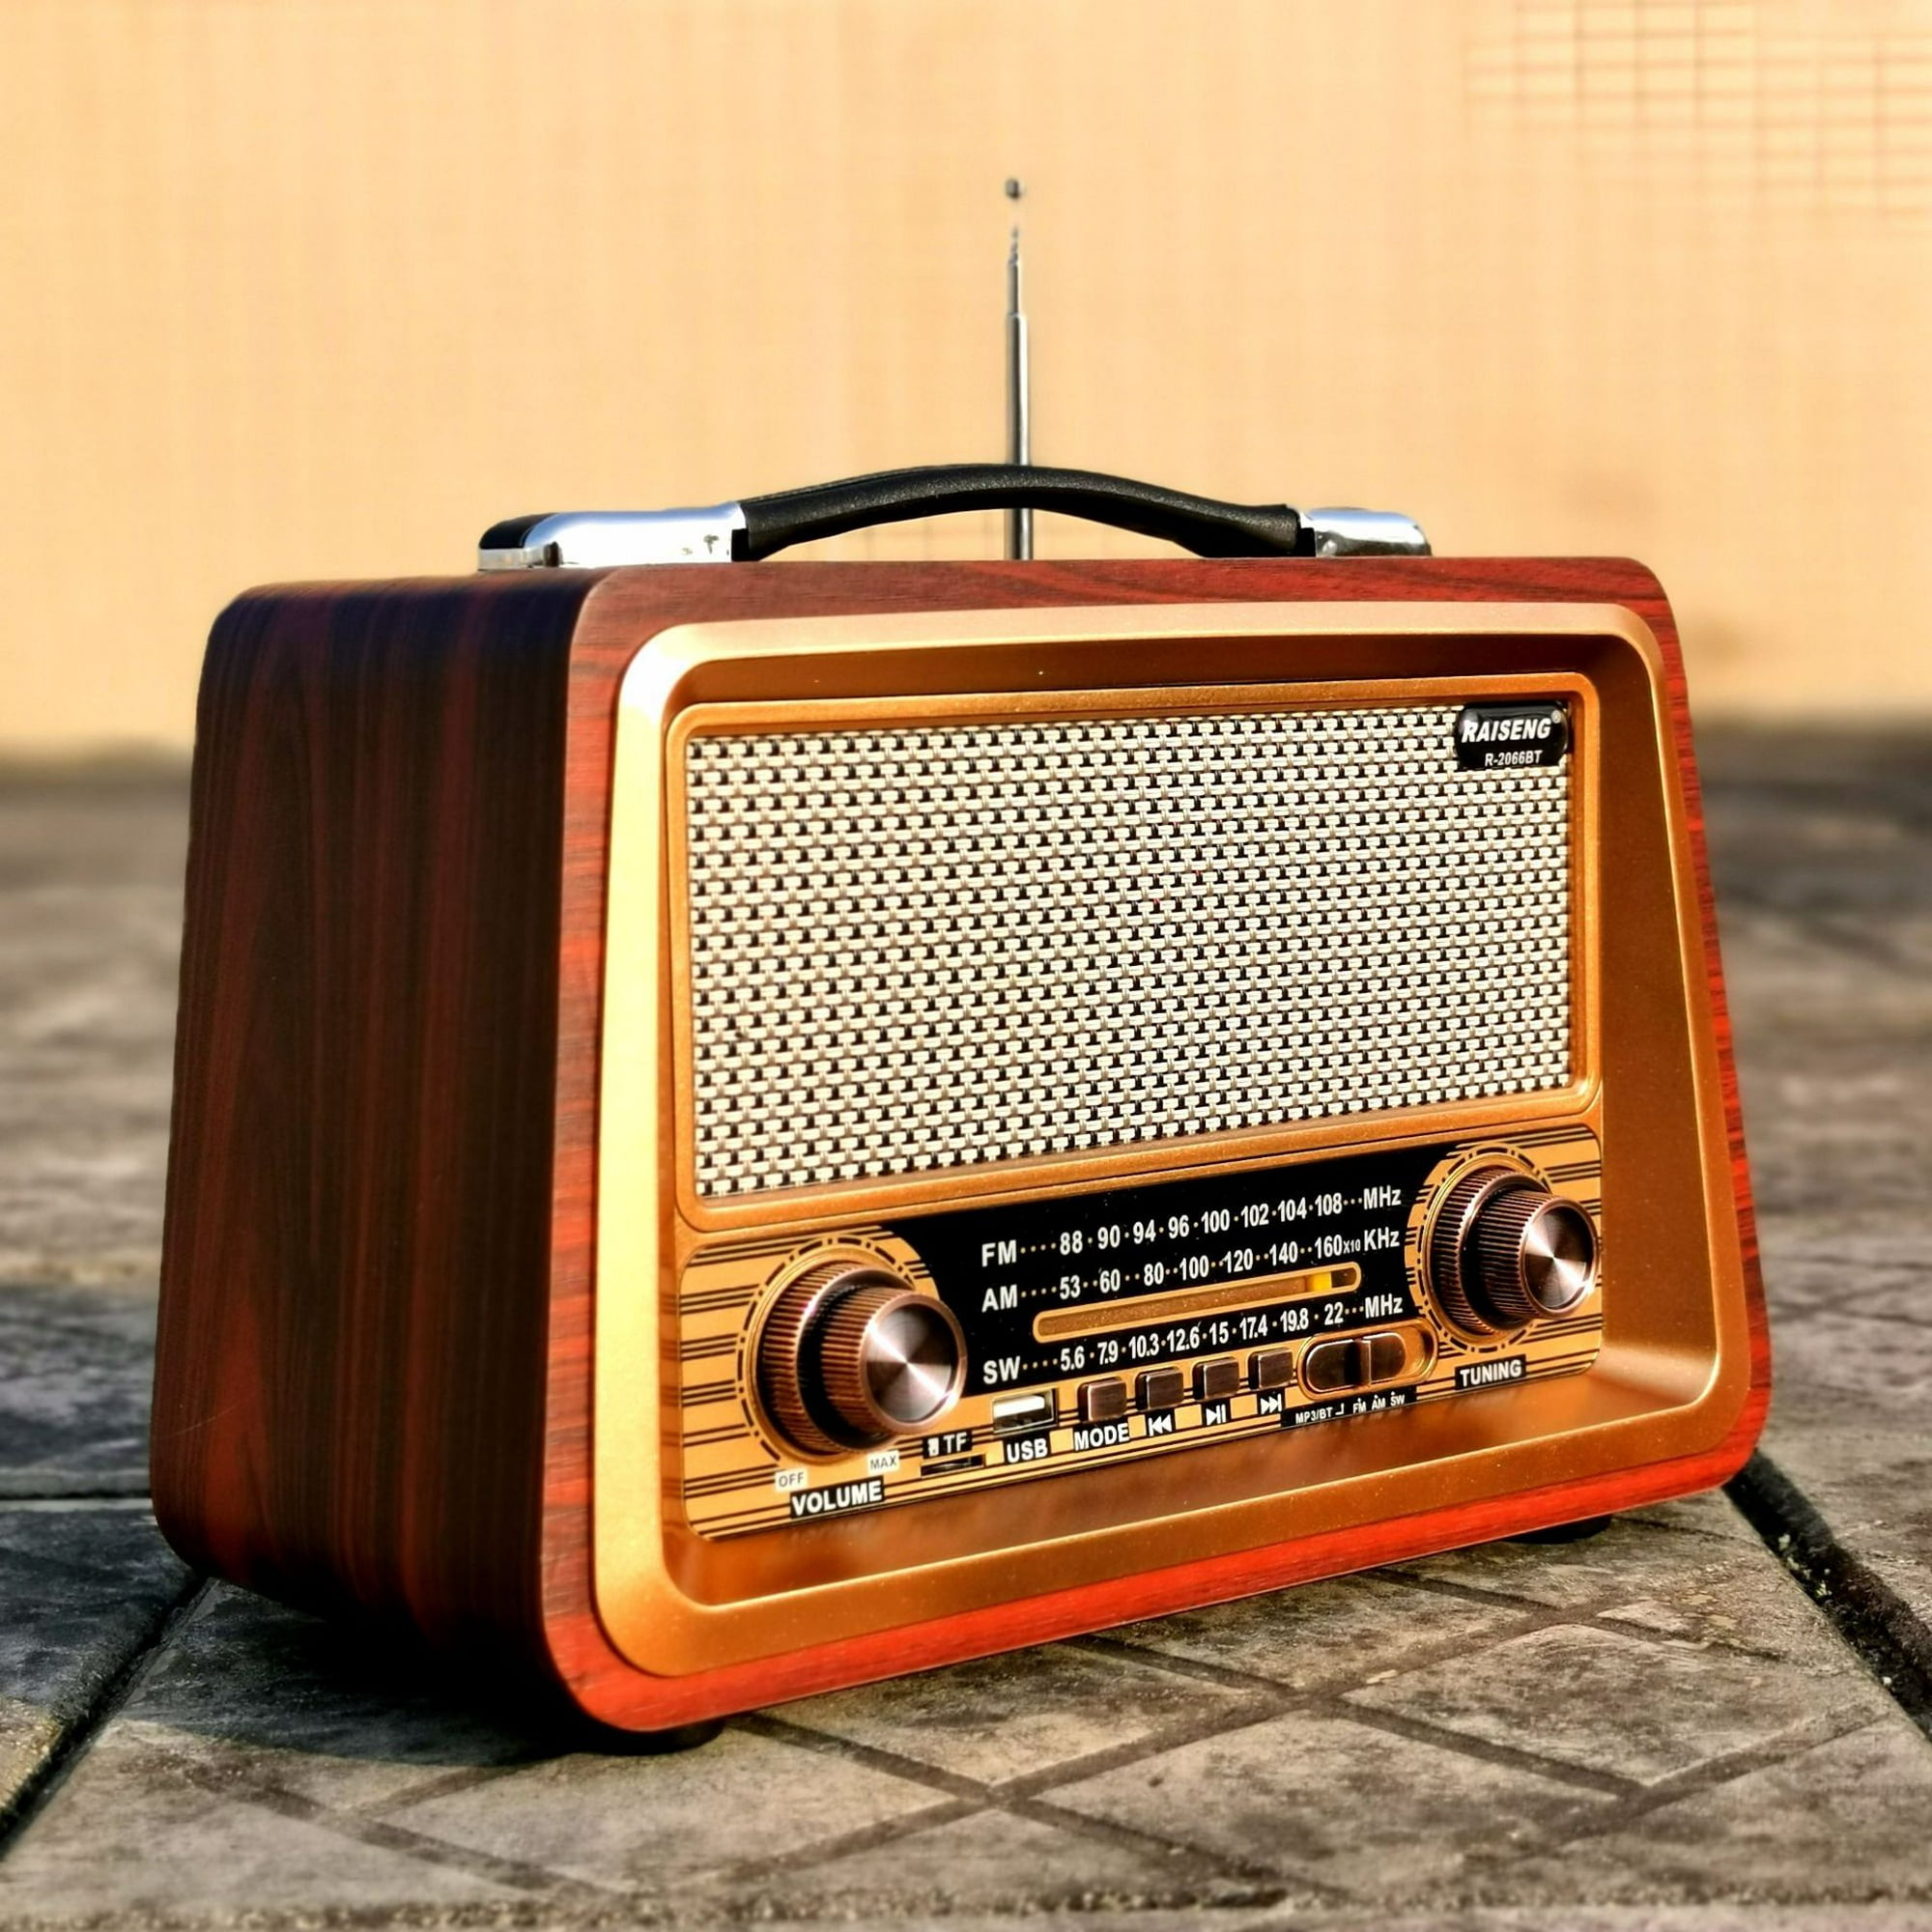 Radio retro Altavoz Bluetooth con sonido claro, radio portátil AM FM r -  VIRTUAL MUEBLES